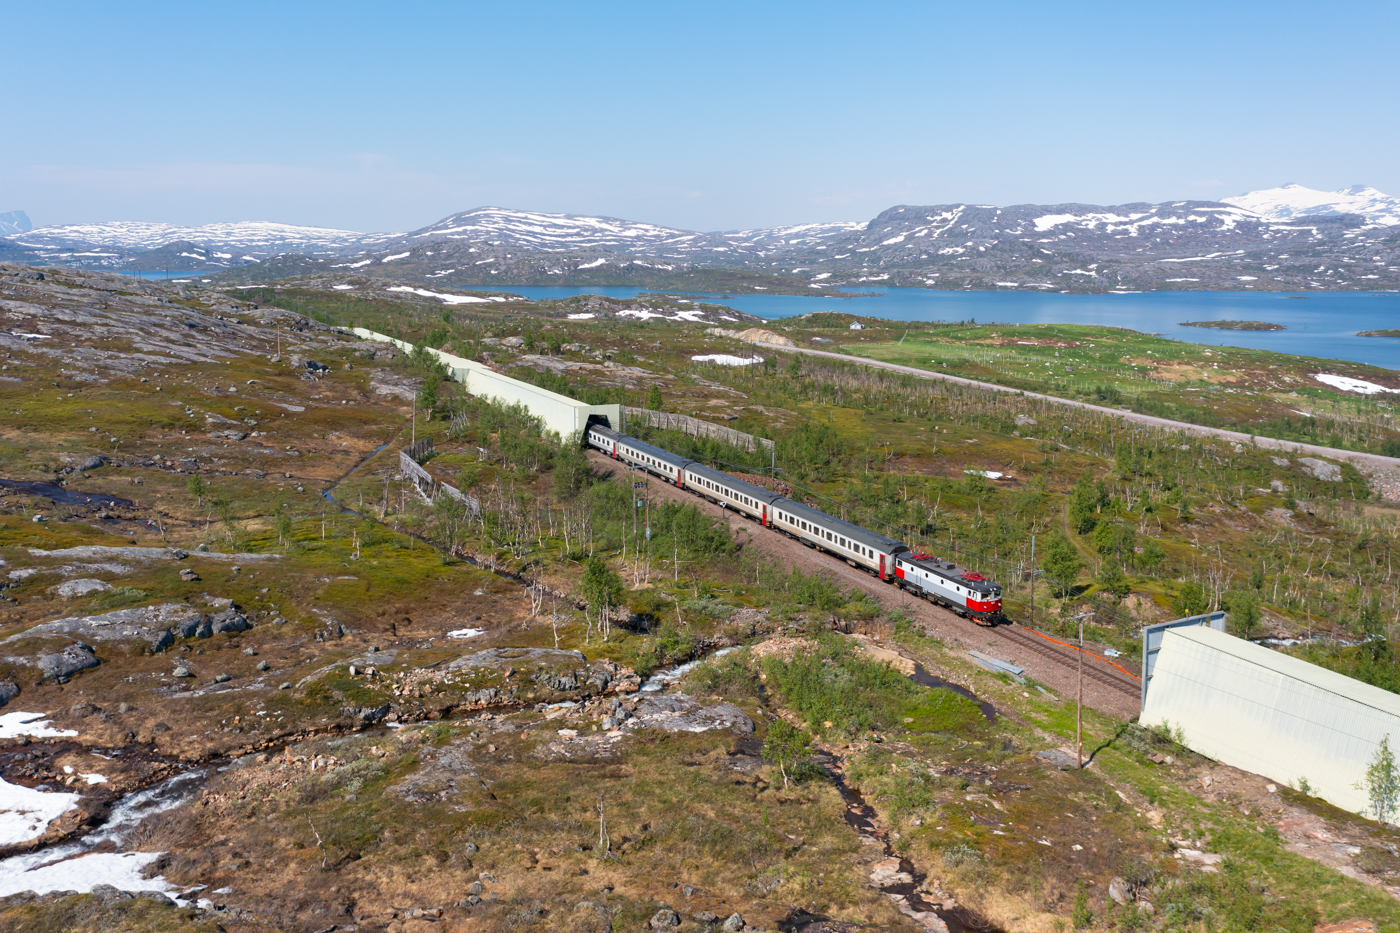 Das letzte Teilstück der Malmbanan/Ofotbanen ab Kiruna bis Narvik ist stark von der rauen Natur im hohen Norden geprägt. Ab Abisko reien sich zahlreiche Lawinenschutzbauten aneinander. Am 28.06.2022 erreicht der IC95 von Narvik nach Luleå in Kürze den Bahnhof Vassijaure. Da am Tag zuvor die Strecke ab dem Nachmittag wegen eines technsischen Defektes gesperrt war, konnte die Nachtzuggarnitur Narvik nicht verlassen und der Tagzug, welcher für den IC95 vorgesehen war, konnte Narvik nicht erreichen. So hat dann am 28.06 die Nachtzuggarnitur den IC95 übernommen.